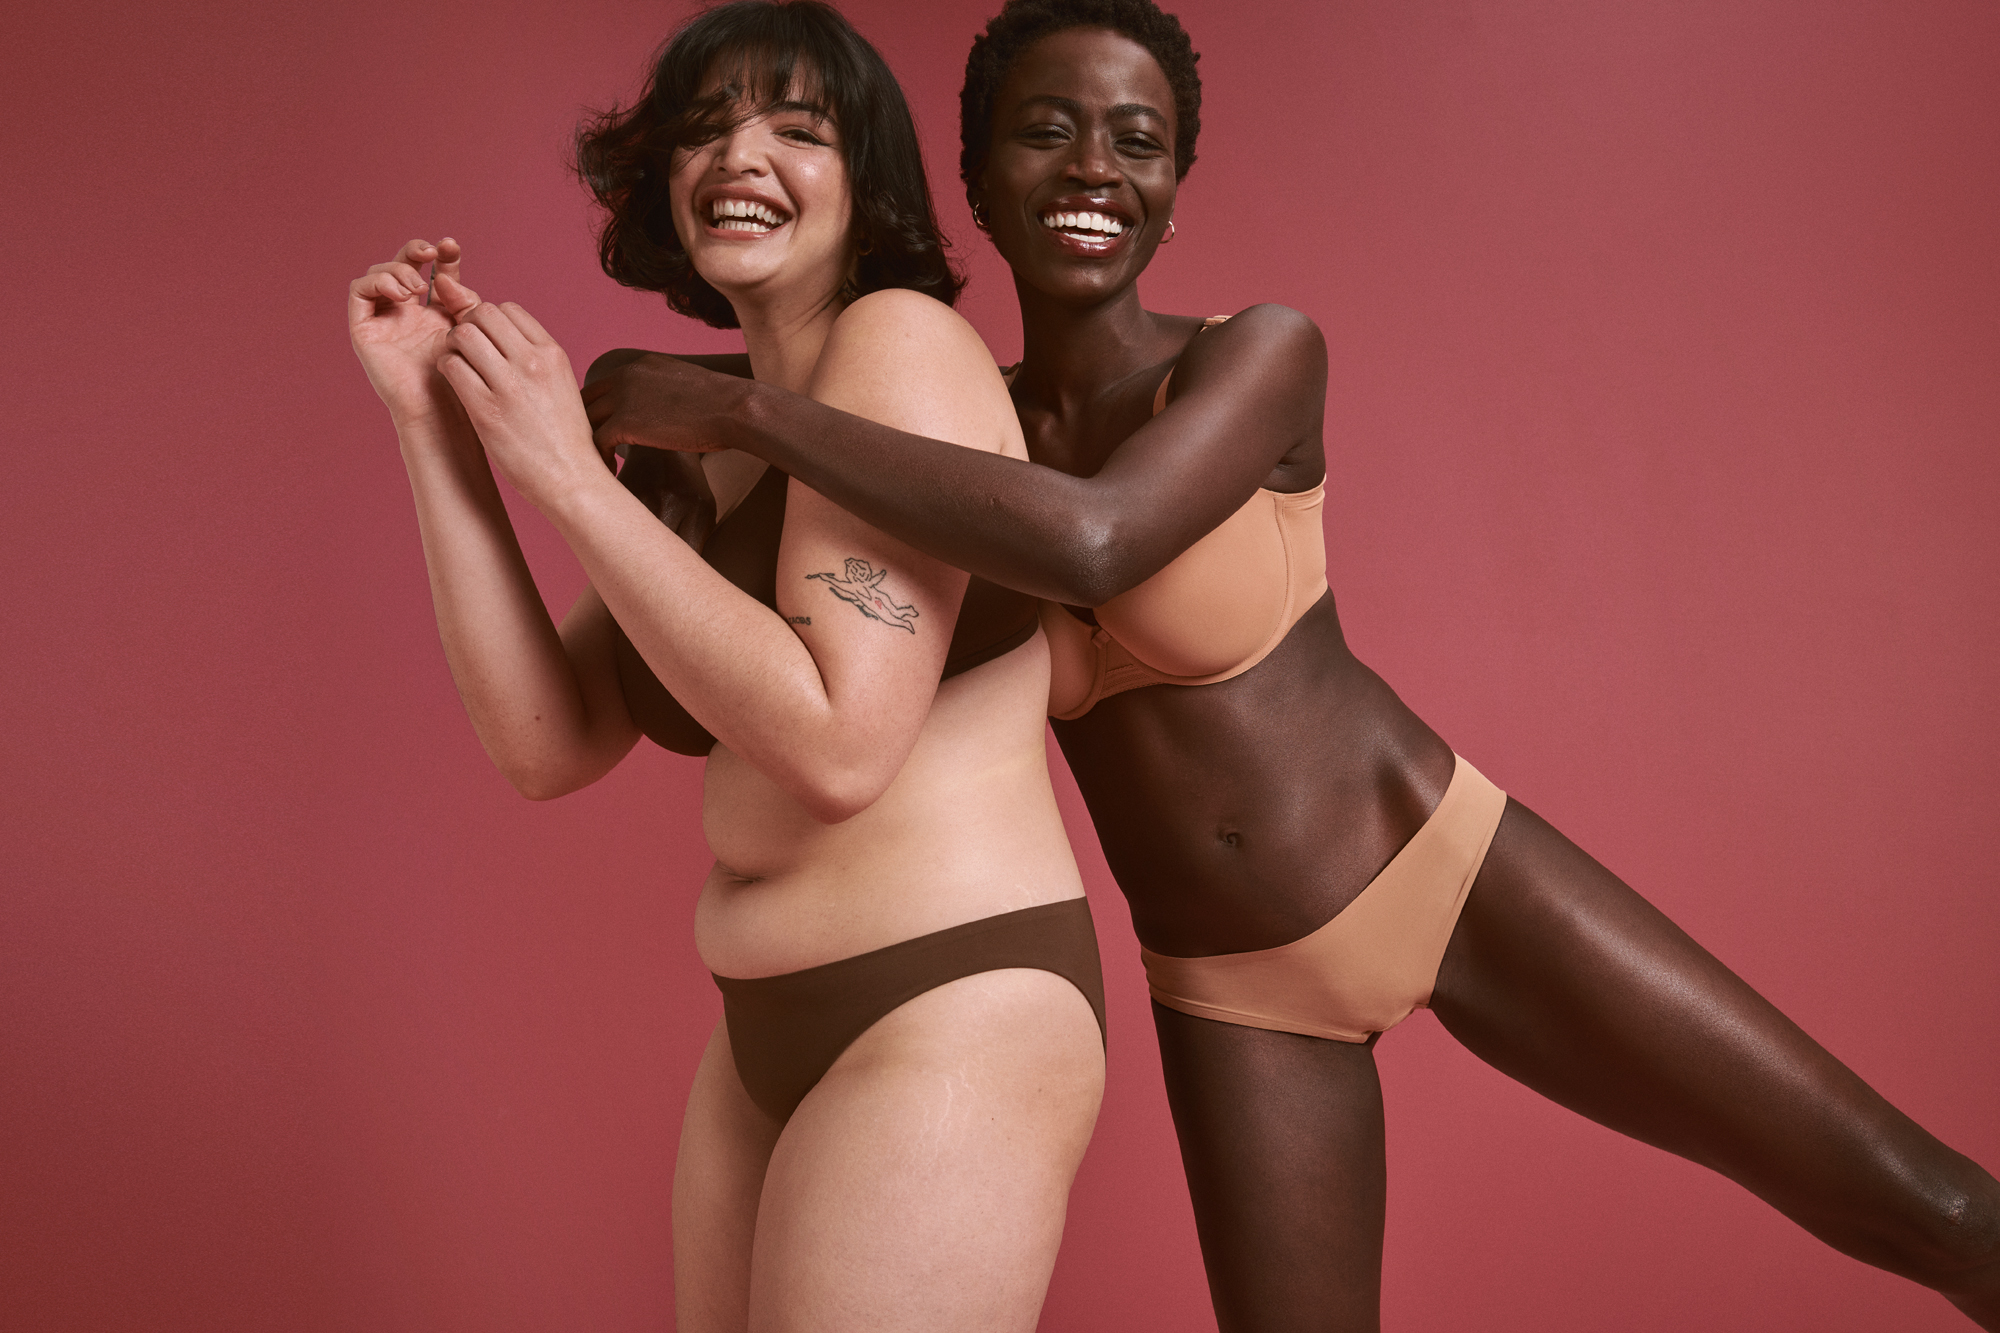 The clothing store's new women's lingerie range